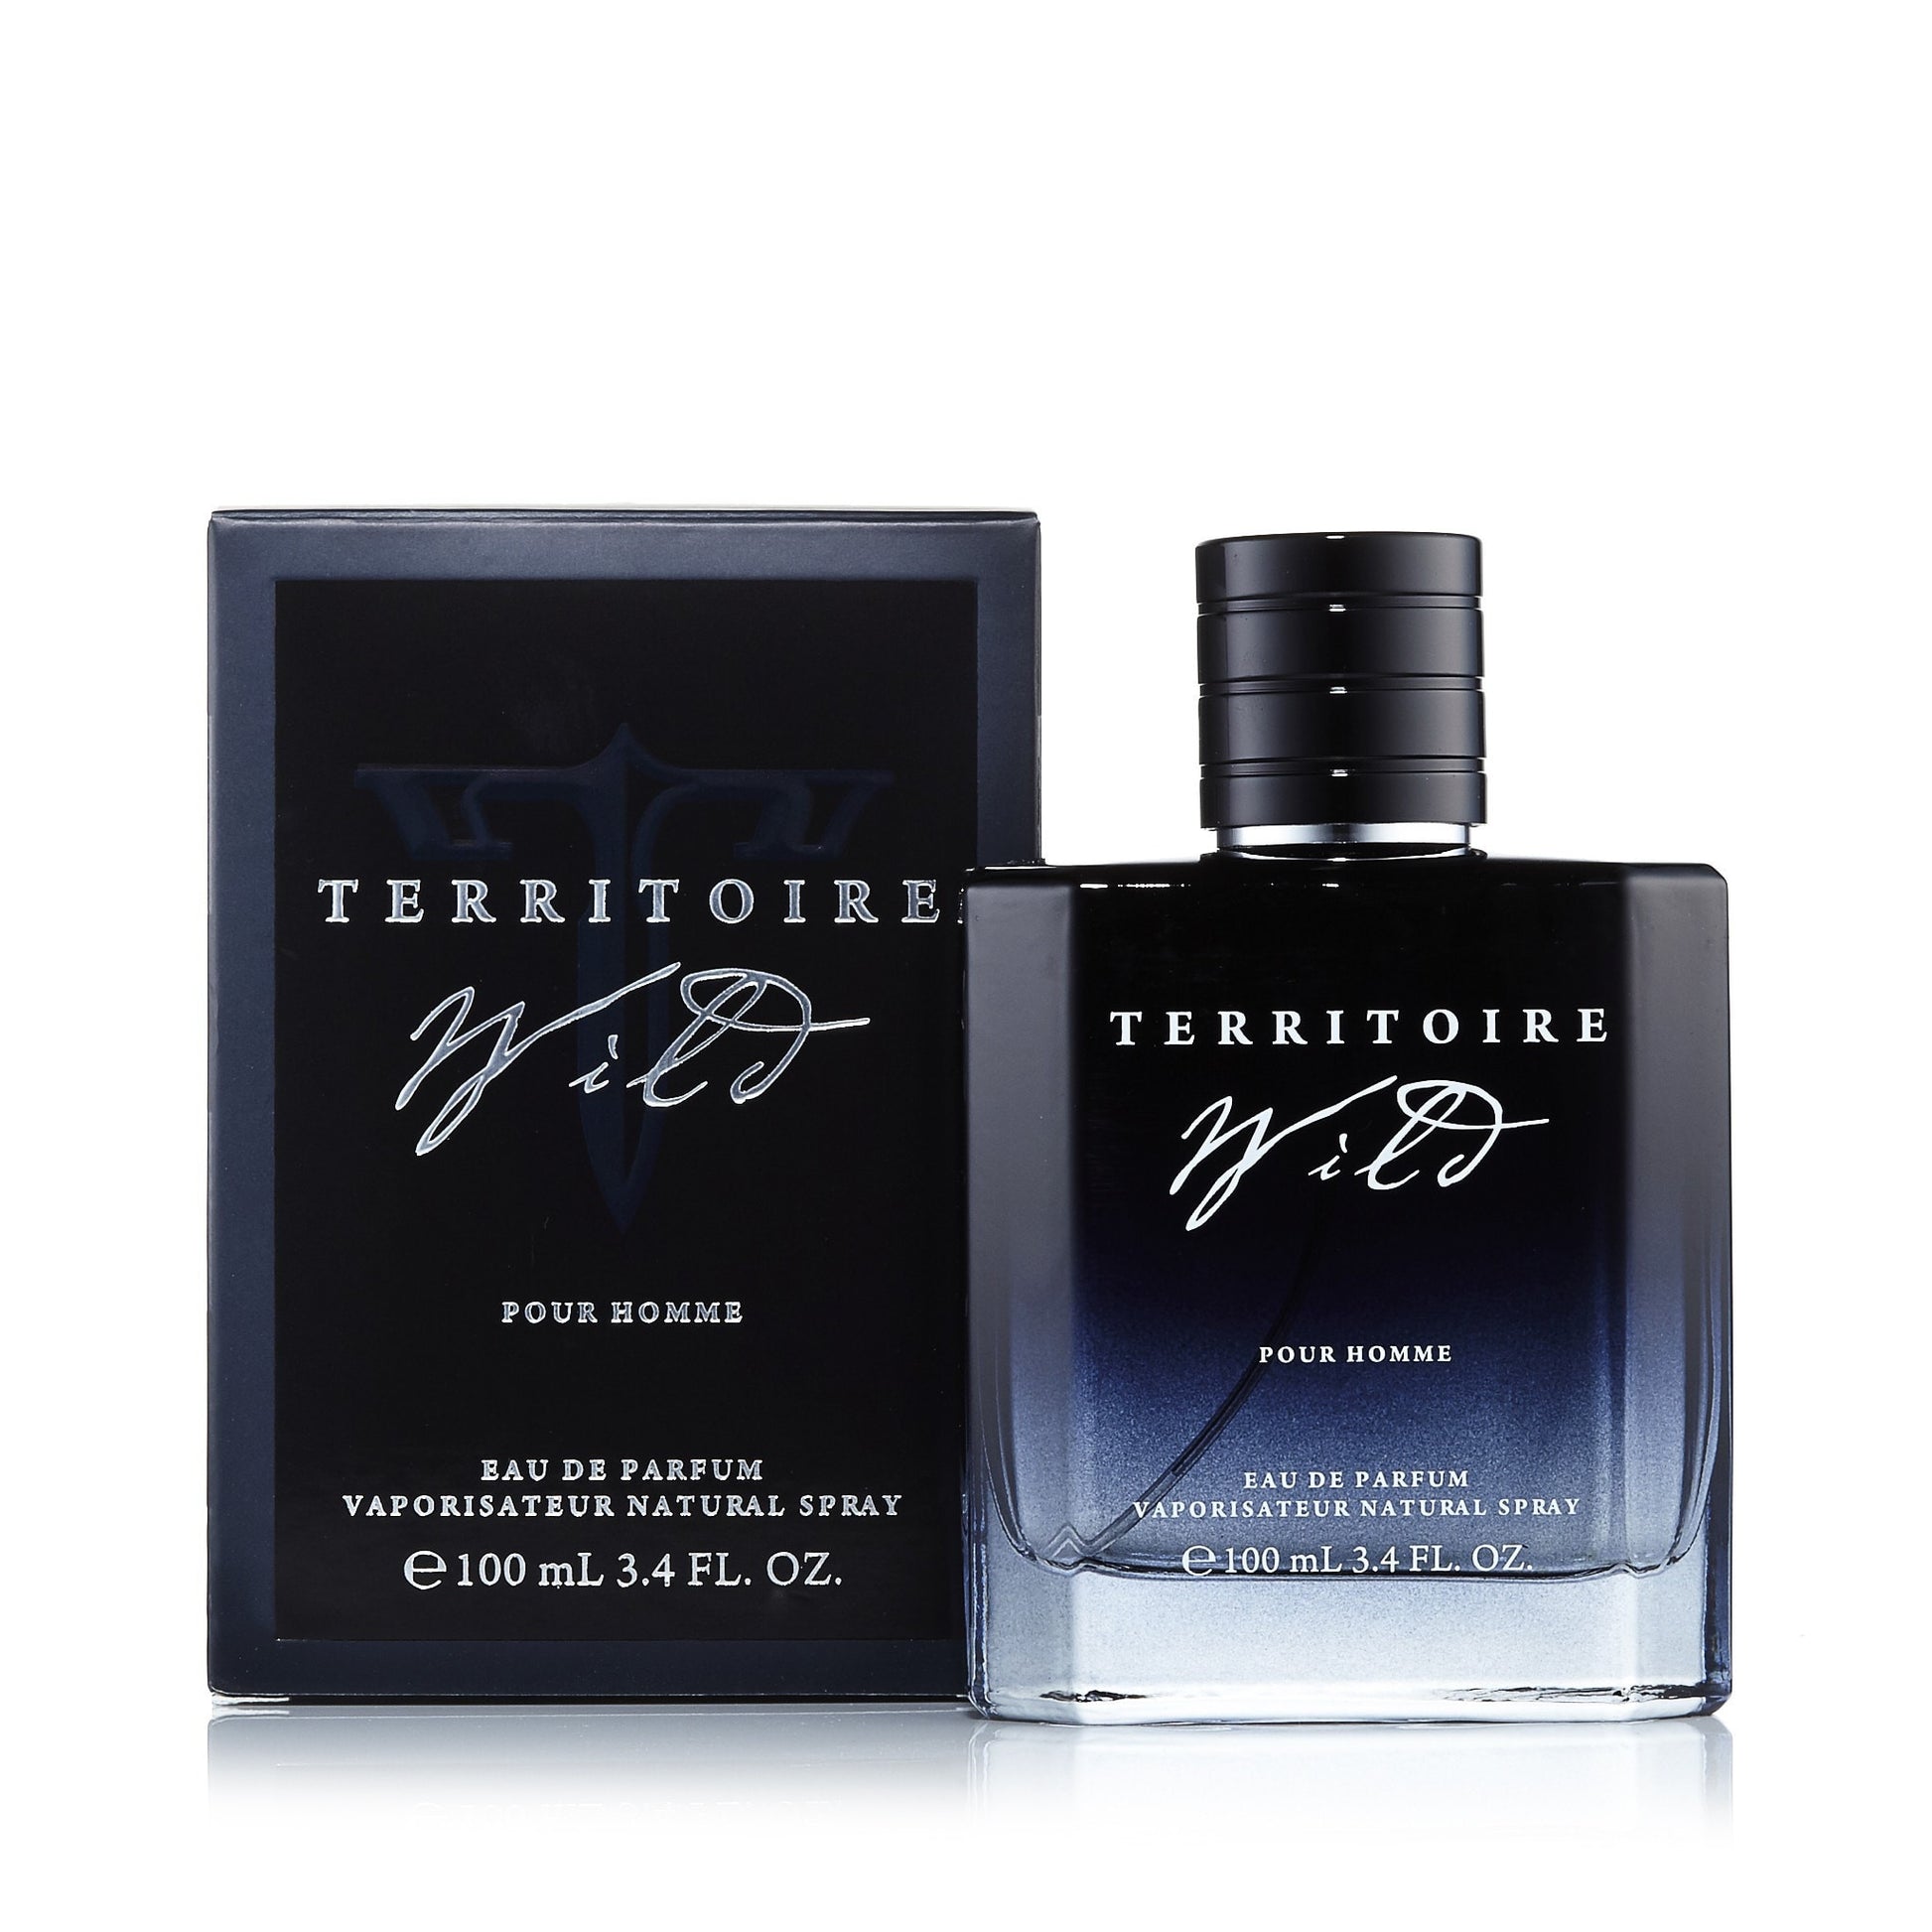  Territoire Wild Eau de Parfum Spray for Men 3.4 oz. Click to open in modal